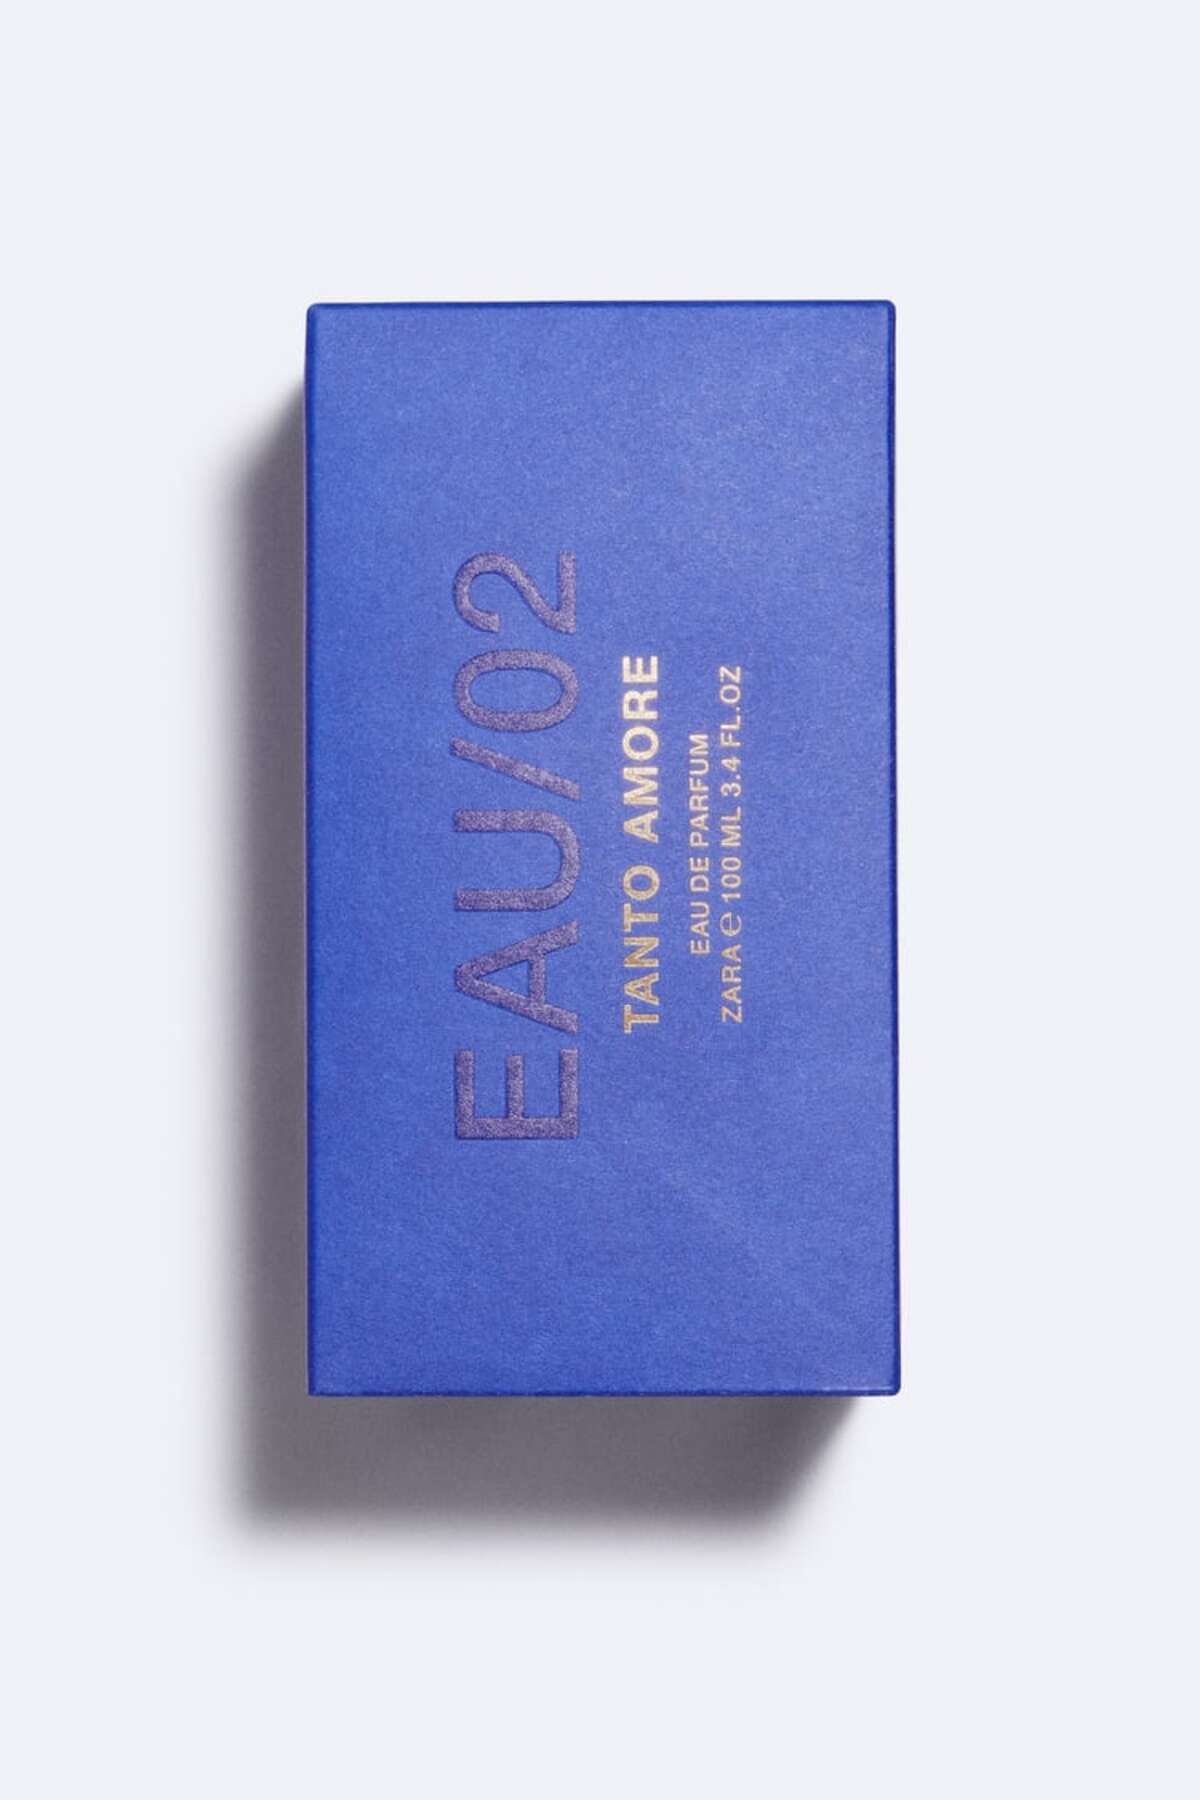 Zara EAU/02 TANTO AMORE EAU DE PARFUM 100 ML (3,38 FL. OZ.) عطر مردانه